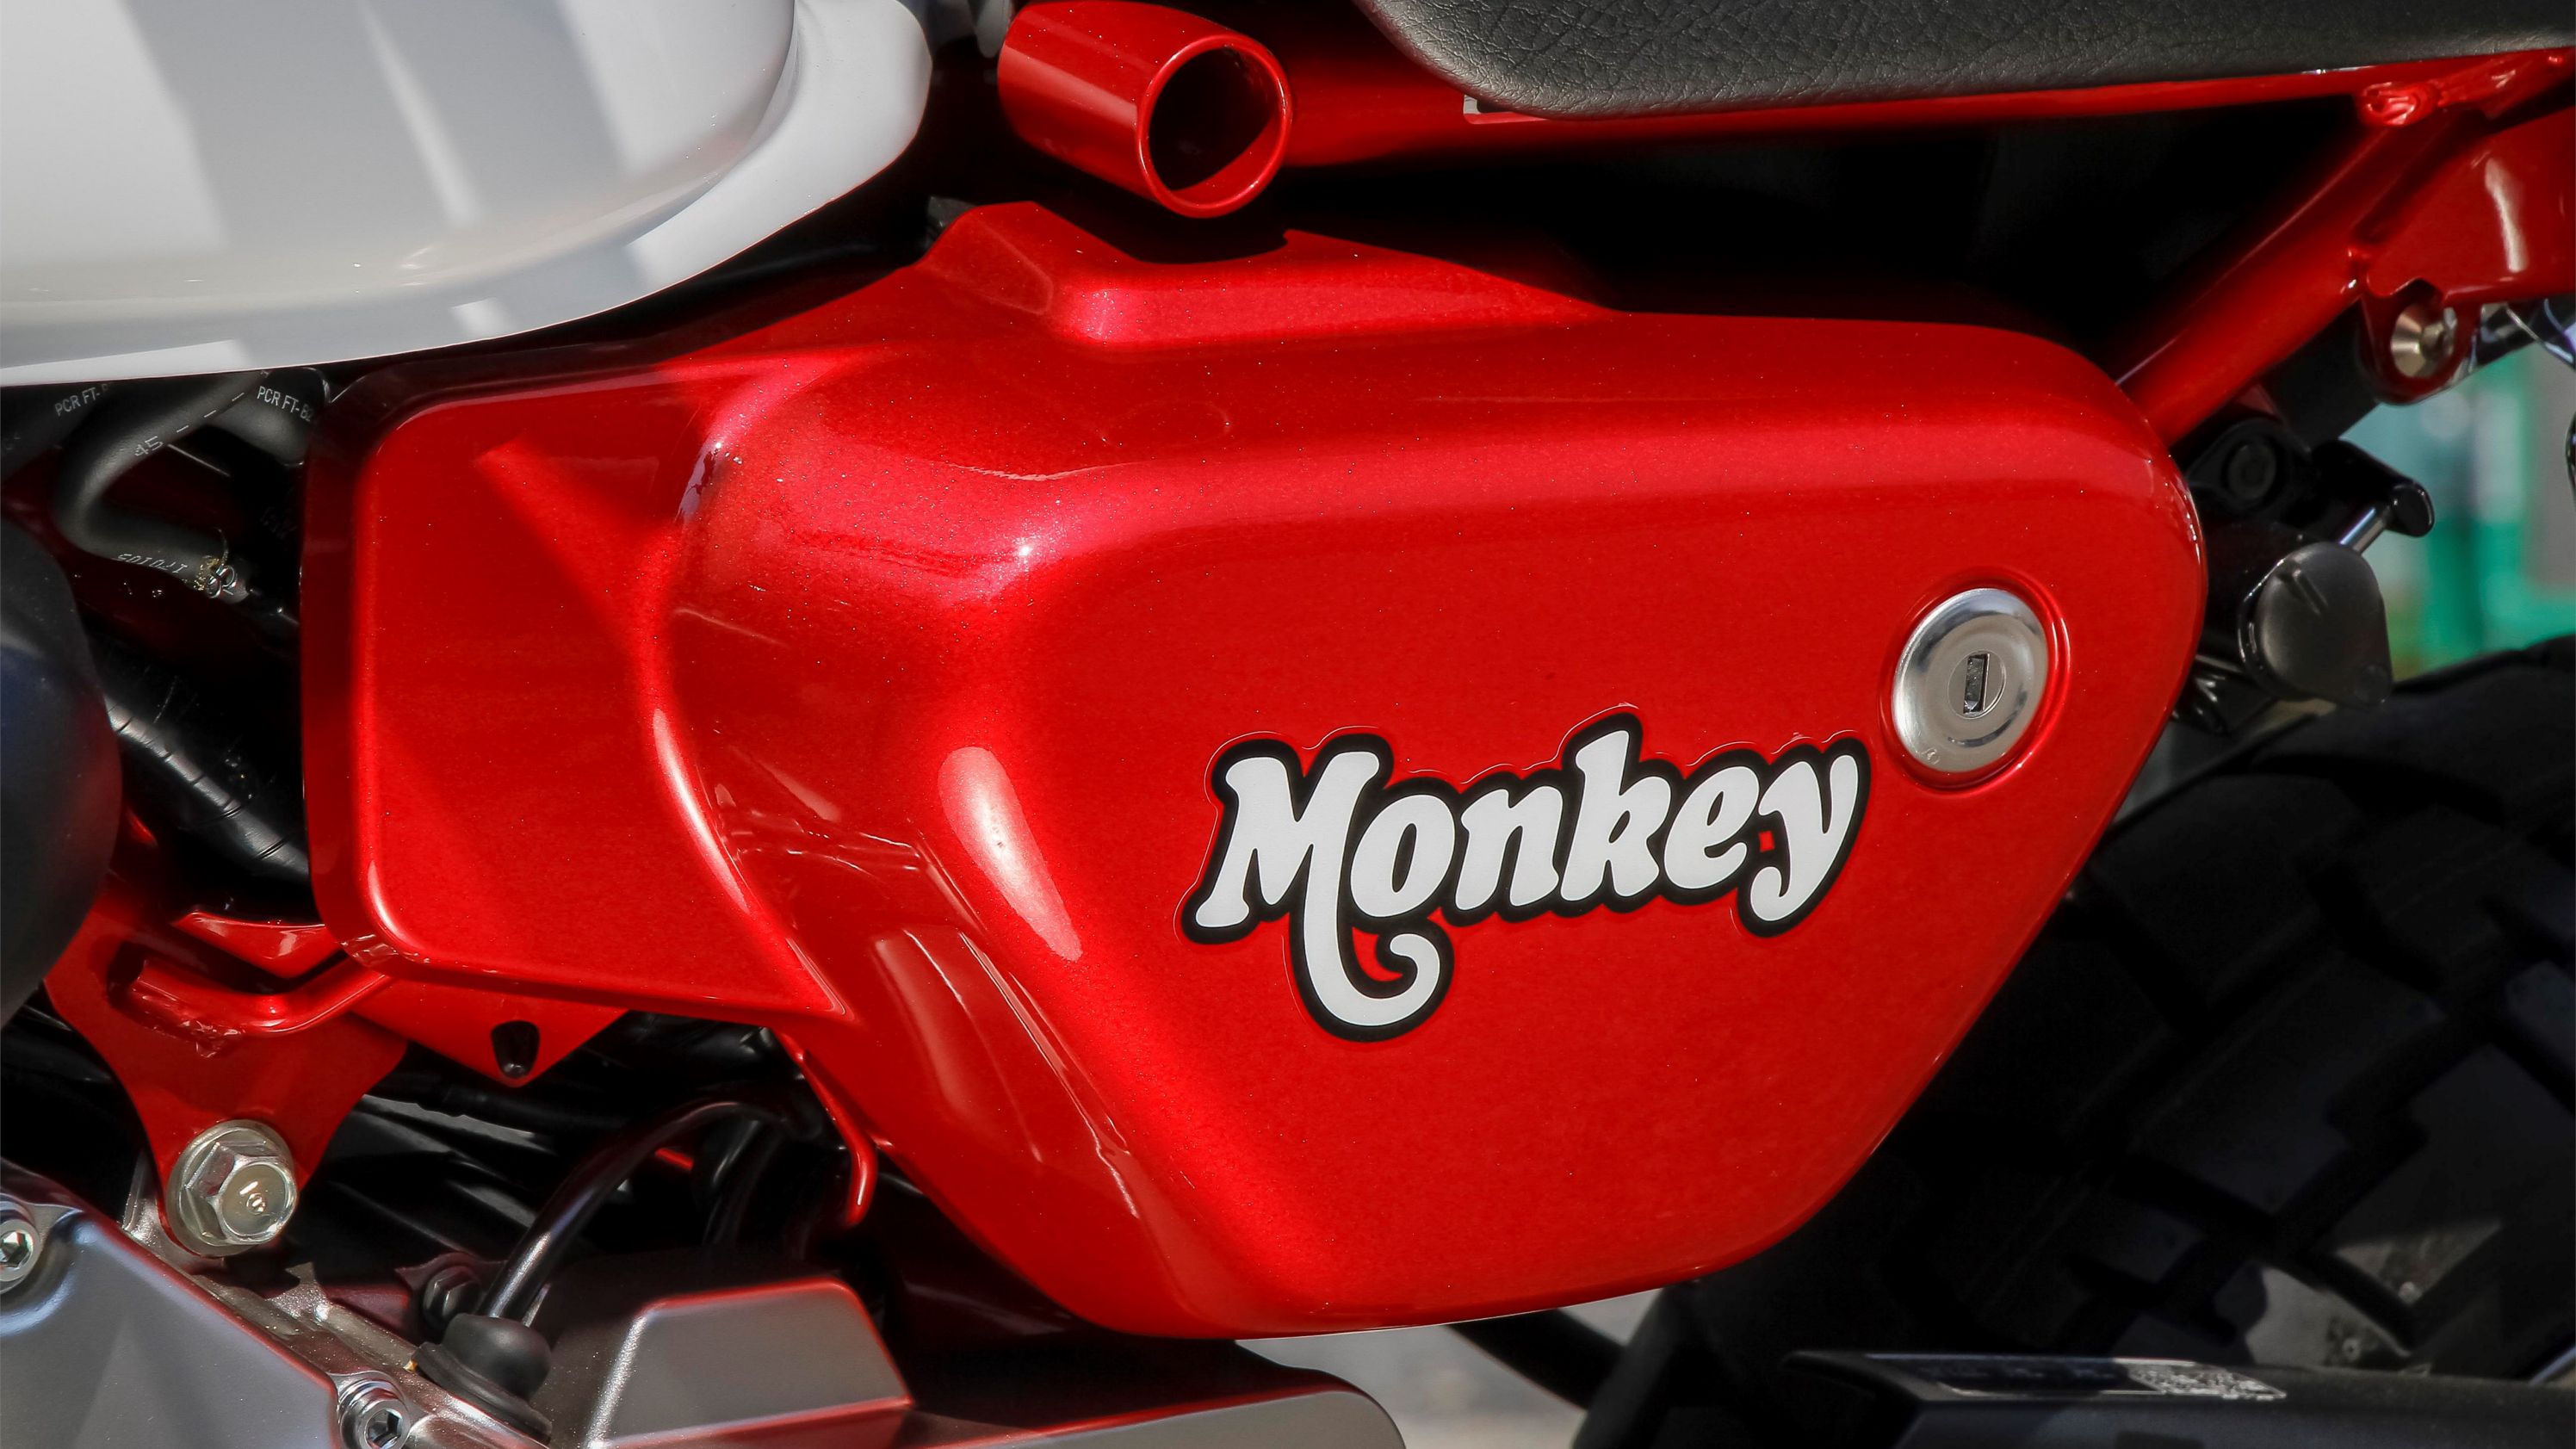 2018 - 2020 Honda Monkey